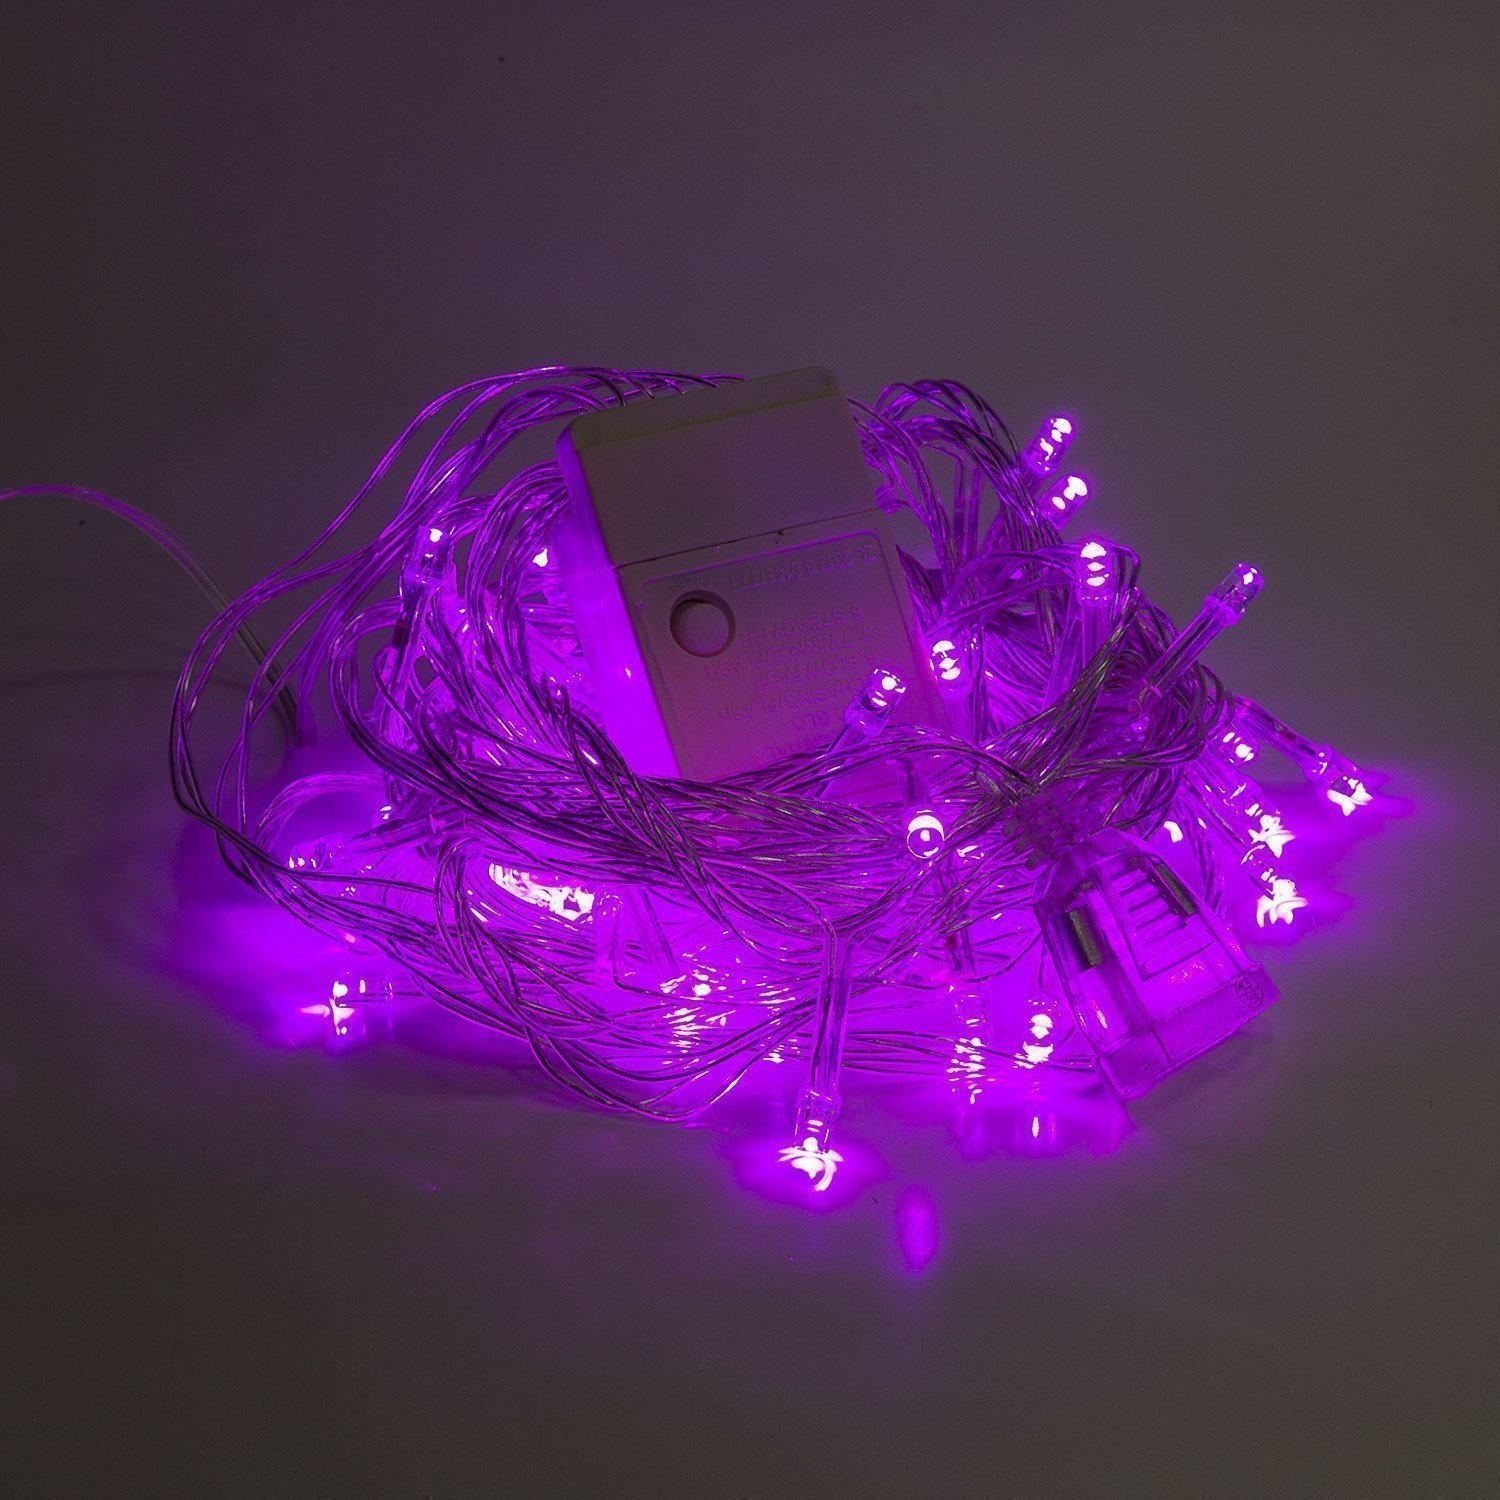 Гирлянда Kurato светодиодная нить, ламп: 60 шт., 6 м, режимов: 1, от сети, фиолетовый (132728)